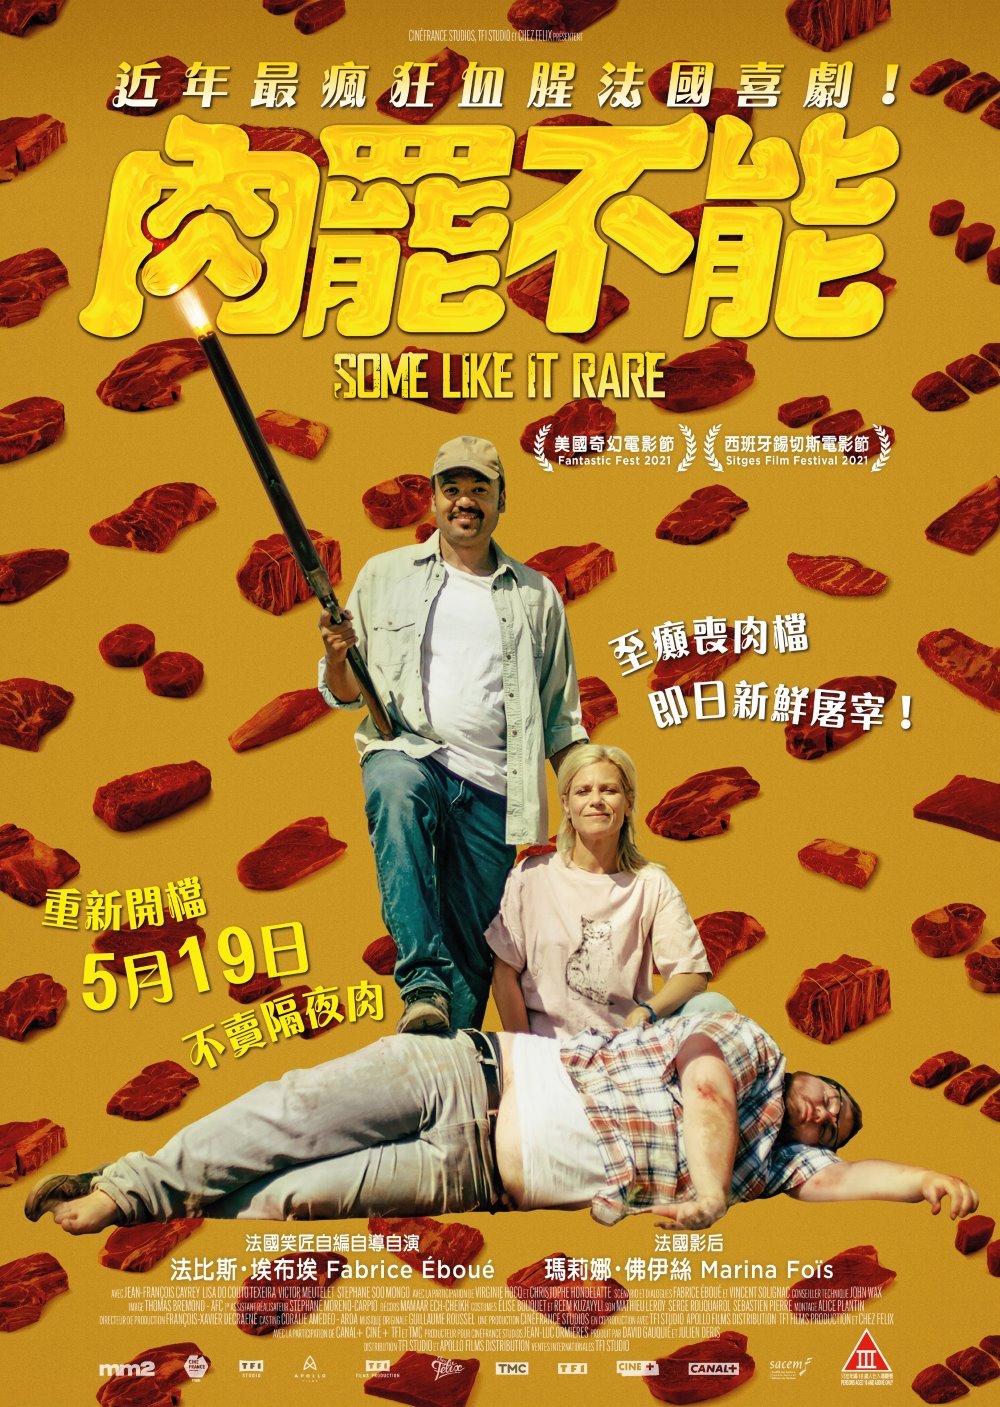 肉罷不能電影圖片 - BARBAQUE_Poster_HK_new-01_1651141891.jpg